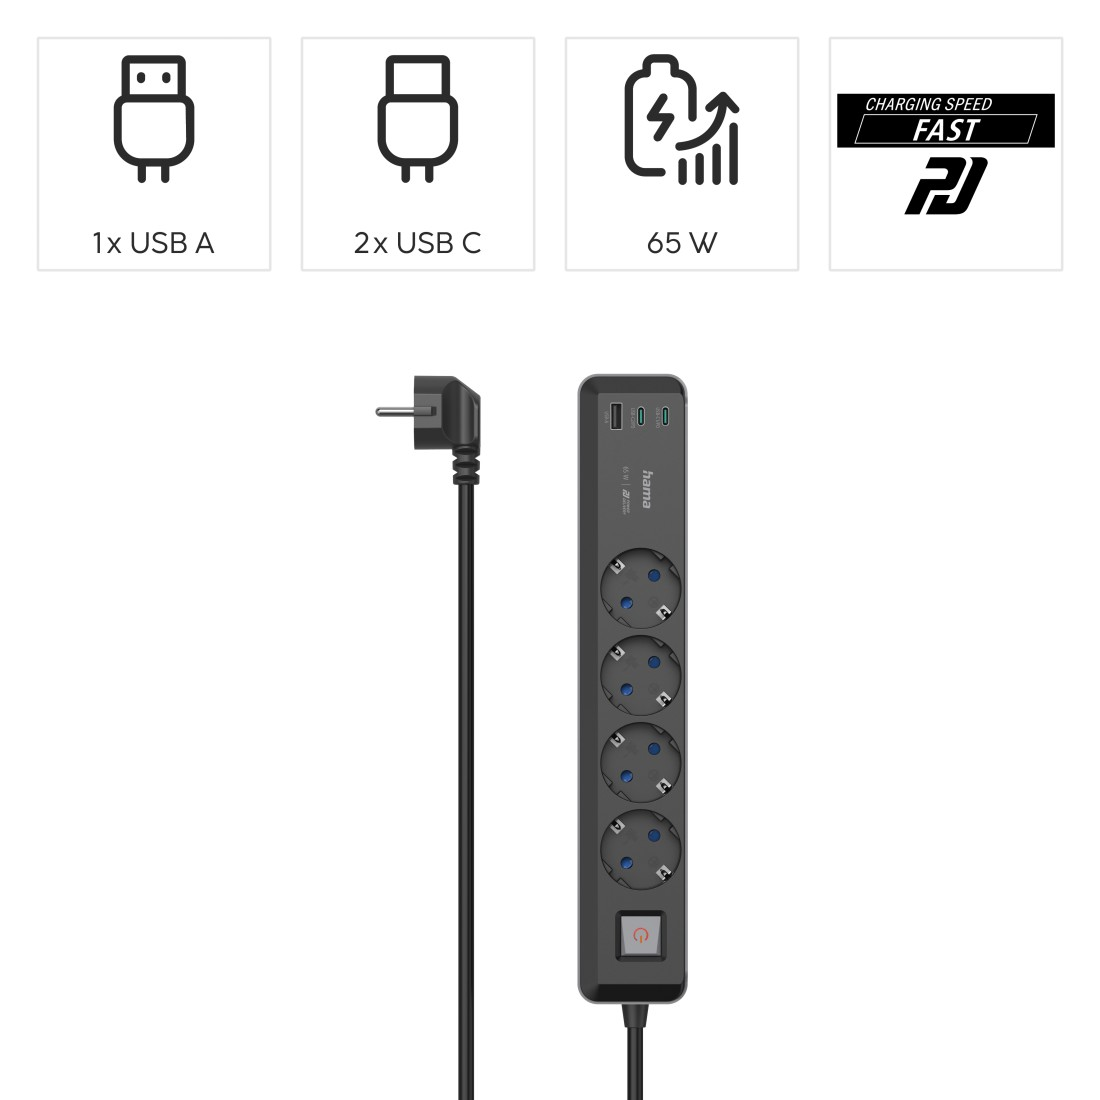 HAMA 2x 4-fach Steckdosenleiste USB-A, m 1,4 1x mit Schalter, USB-C